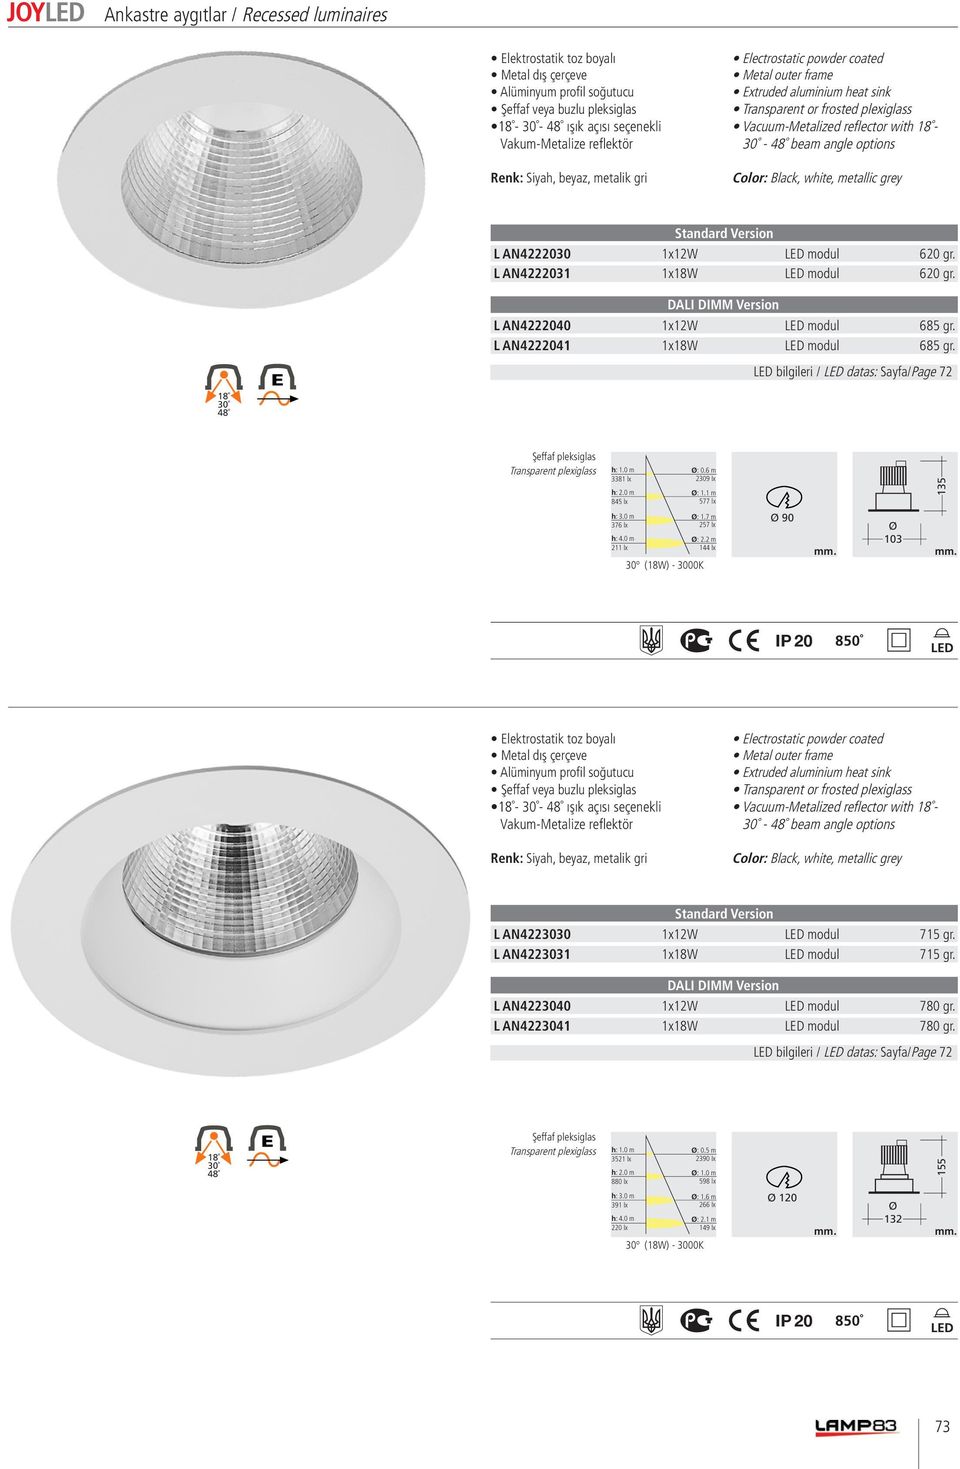 bilgileri / datas: Sayfa/Page 72 135 90 103 - - ışık açısı seçenekli Vacuum-Metalized reflector with - - beam angle options L AN4223030 1x12W modul 715 gr.